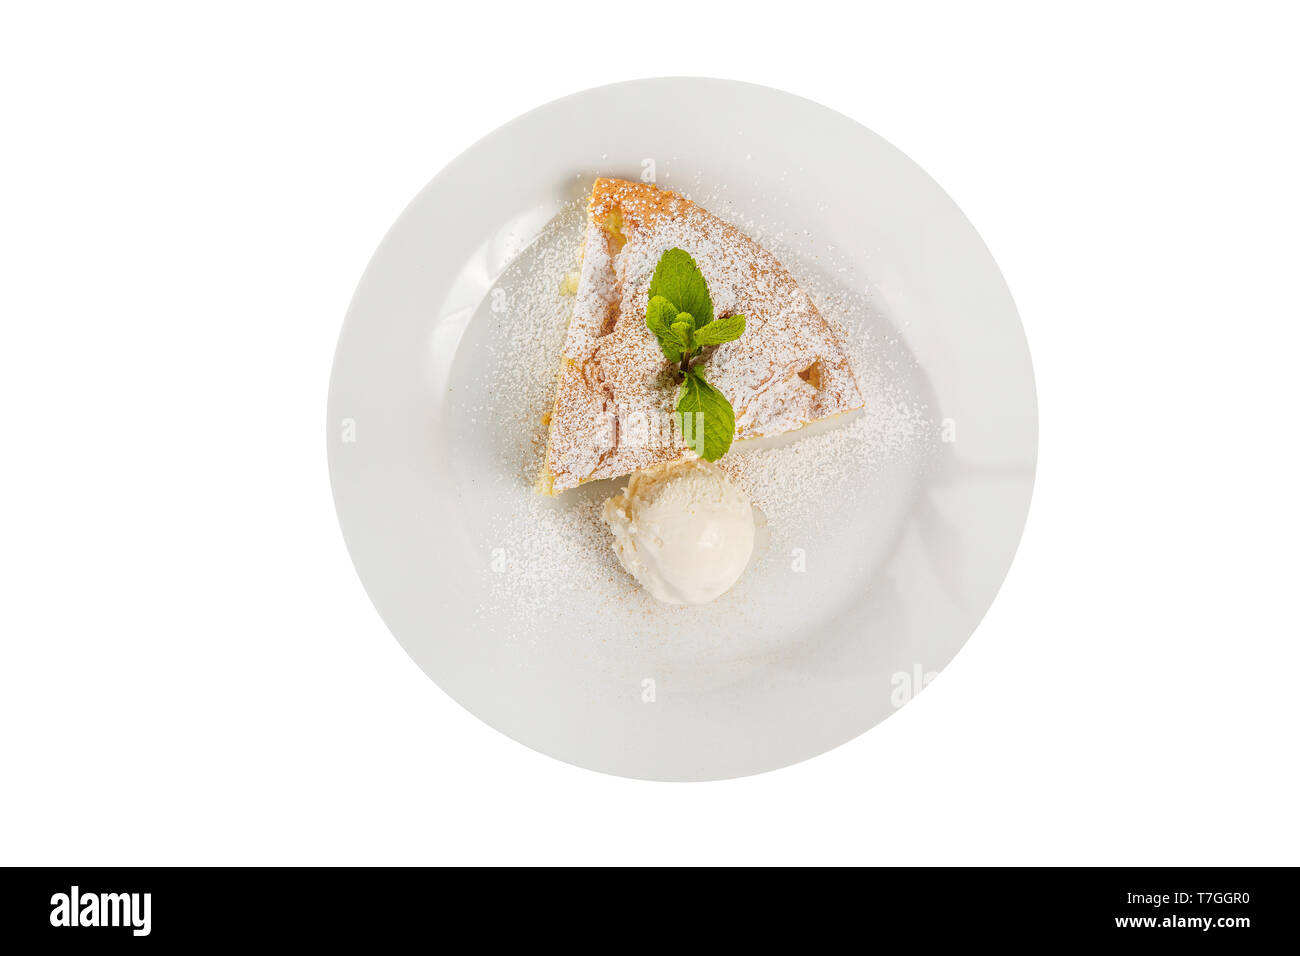 La tarte aux pommes, charlotte avec de la glace à la vanille, le sucre à glacer et feuille de menthe, servi sur un plateau isolé sur fond blanc, . Dessert pour un menu dans un café, r Banque D'Images